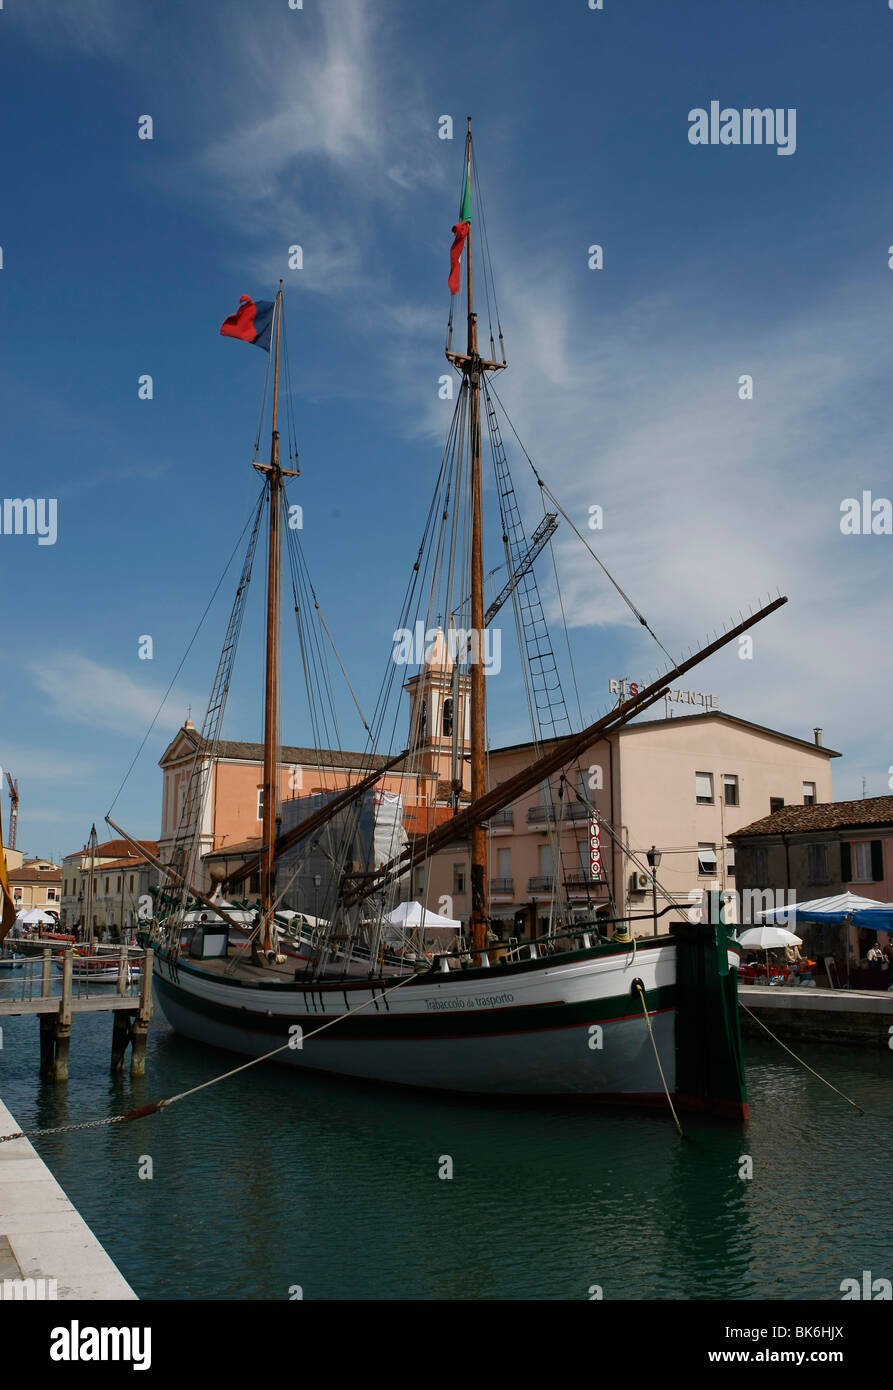 Museo del barco en el puerto del canal que fue ideado por Leonardo da Vinci, Cesenatico, provincia de Forlì-Cesena, Emilia-Romaña, Italia, Foto de stock